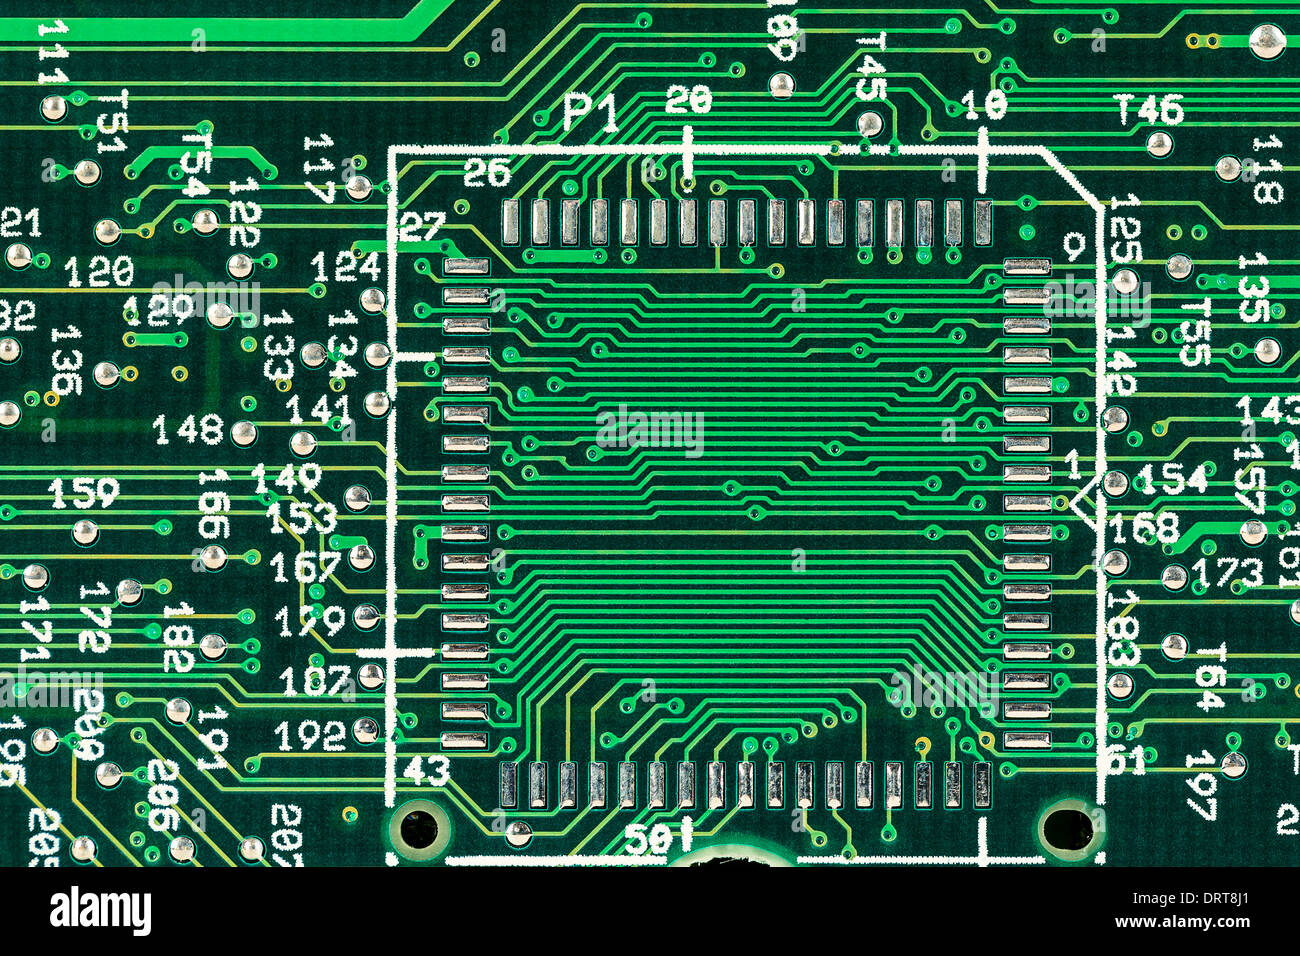 Green printed circuit board Stock Photo